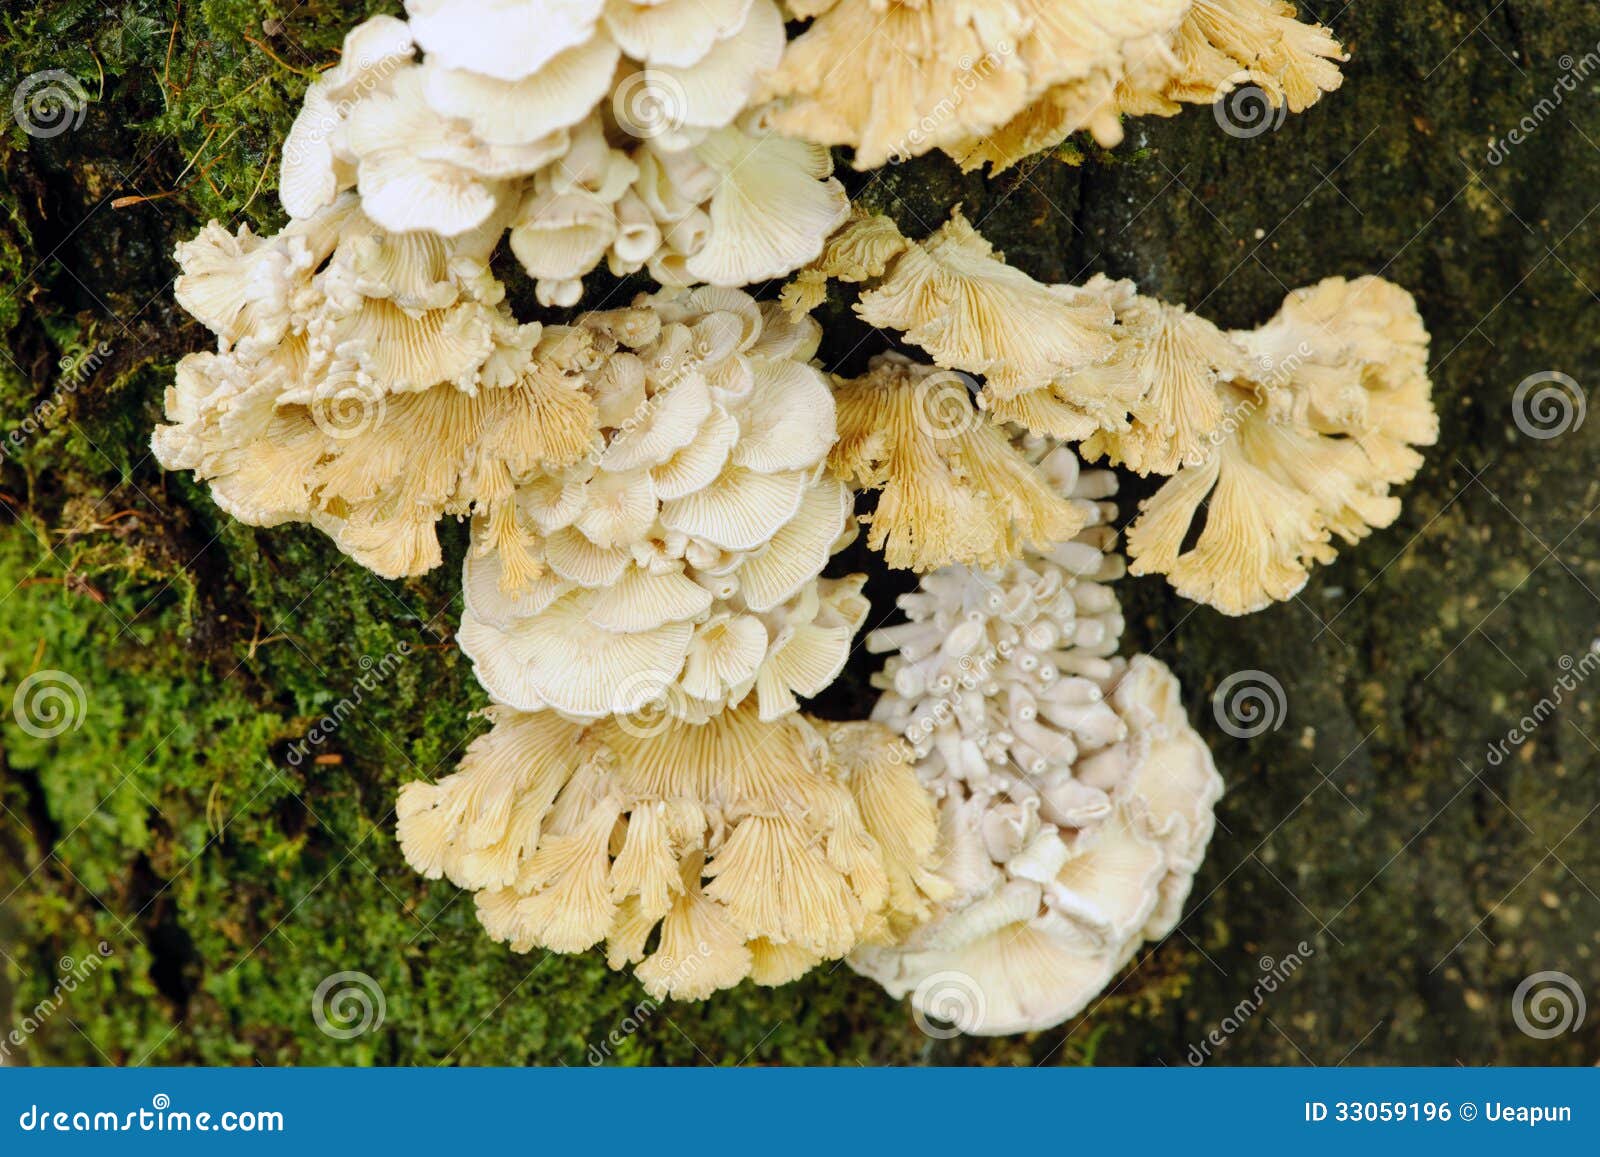 schizophyllum commune mushroom